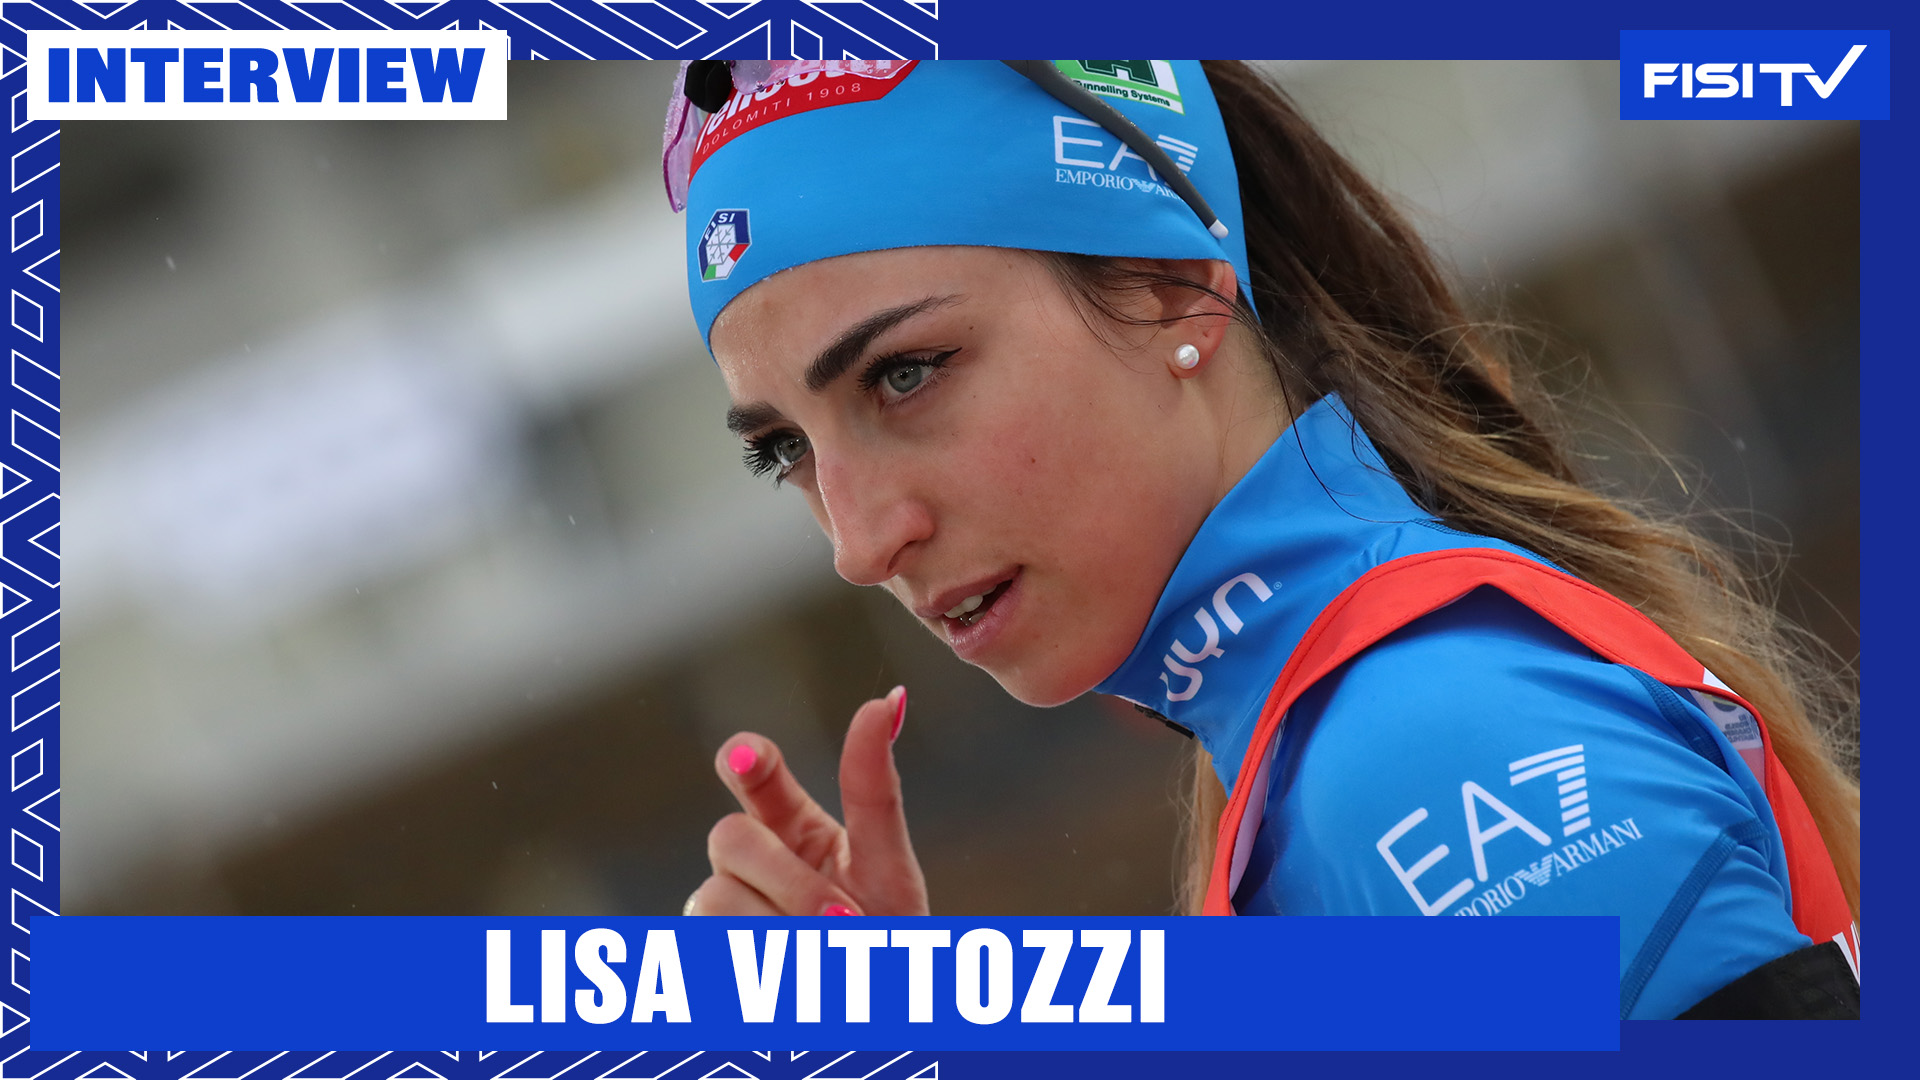 Lisa Vittozzi | “Questa coppa rappresenta tutto il mio percorso” | FISI TV